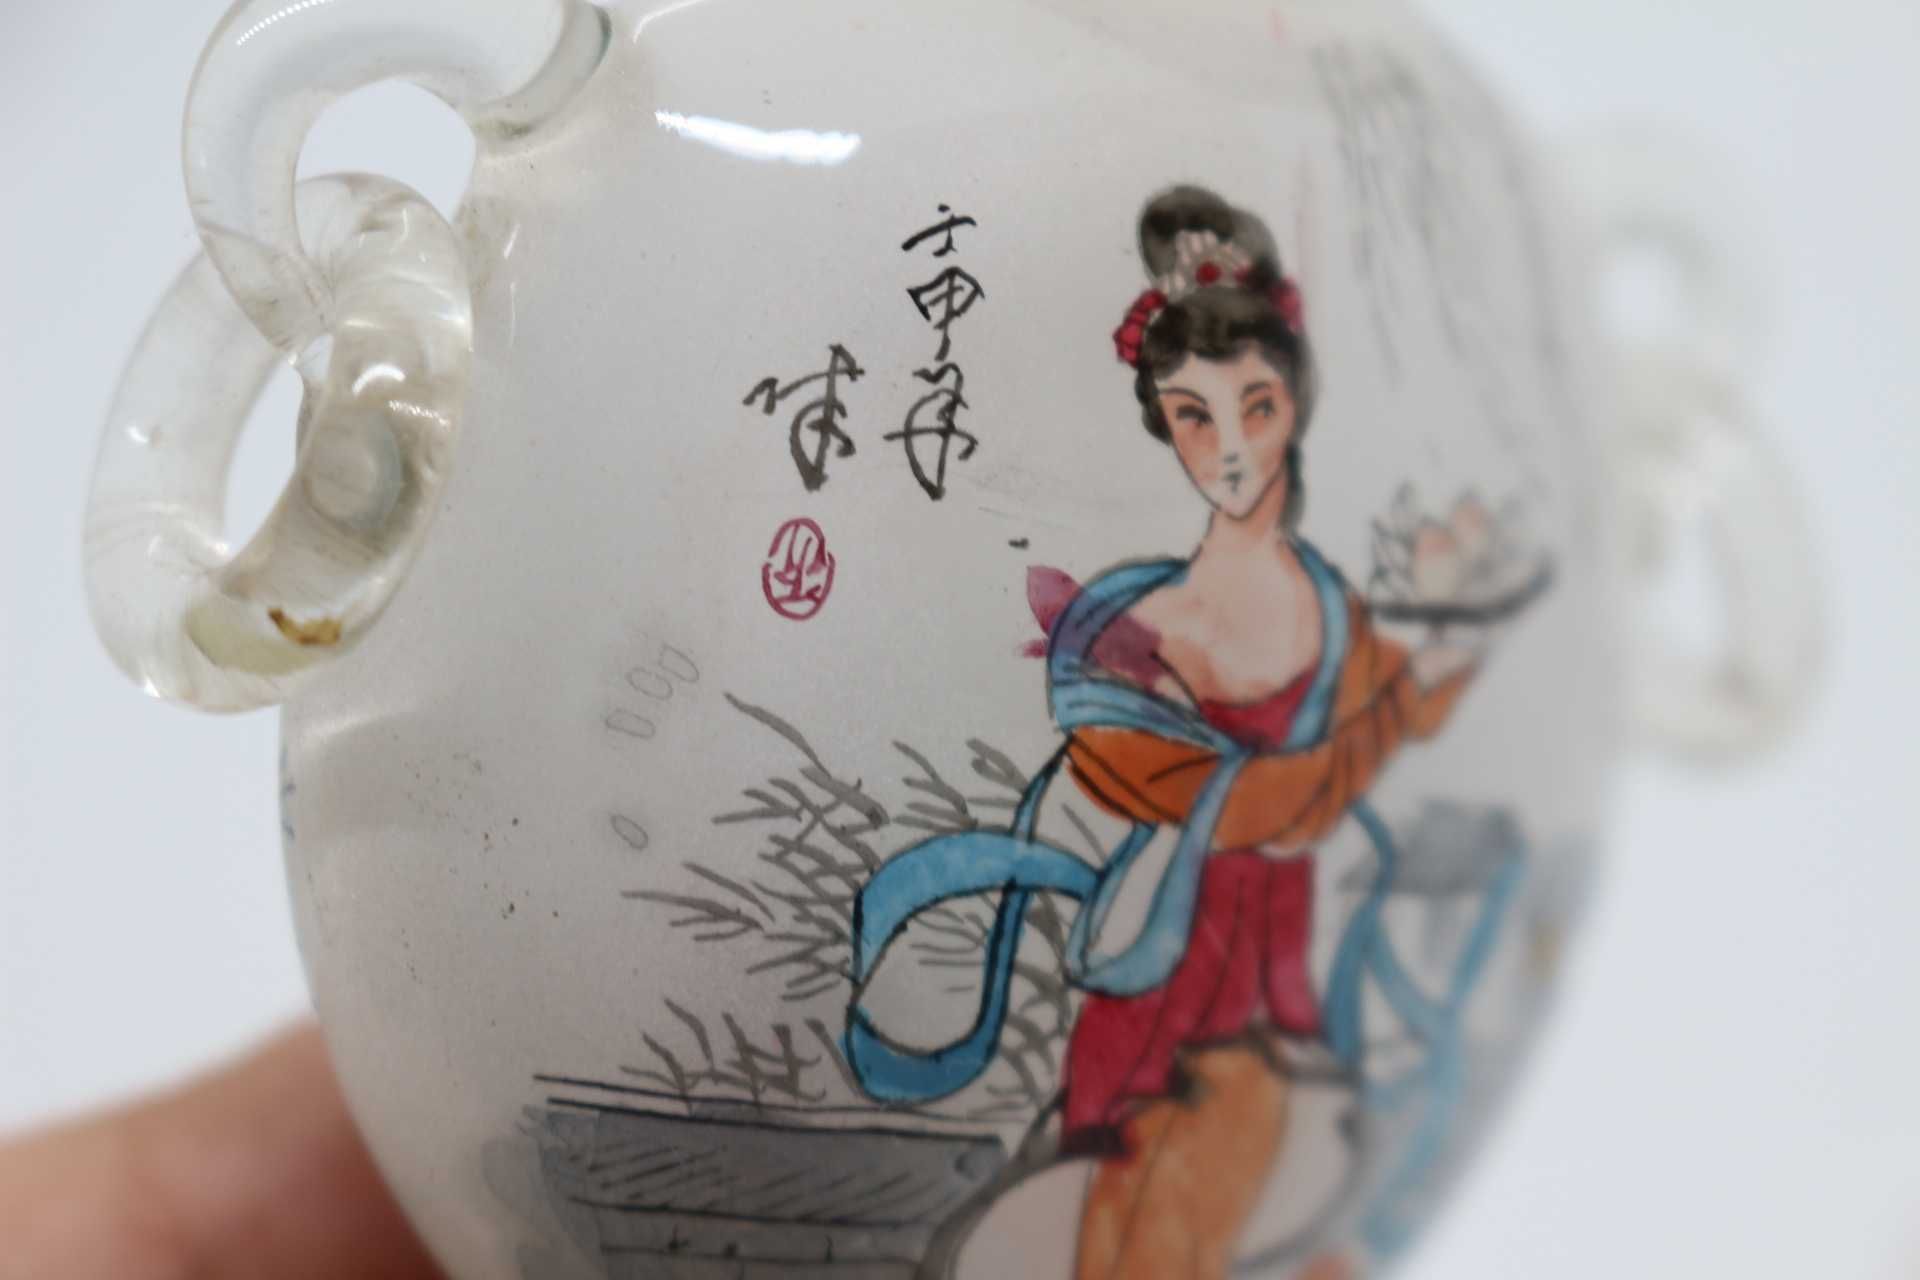 Snuff Bottle Coração em Vidro e Figuras Dinastia Qing XIX marcada